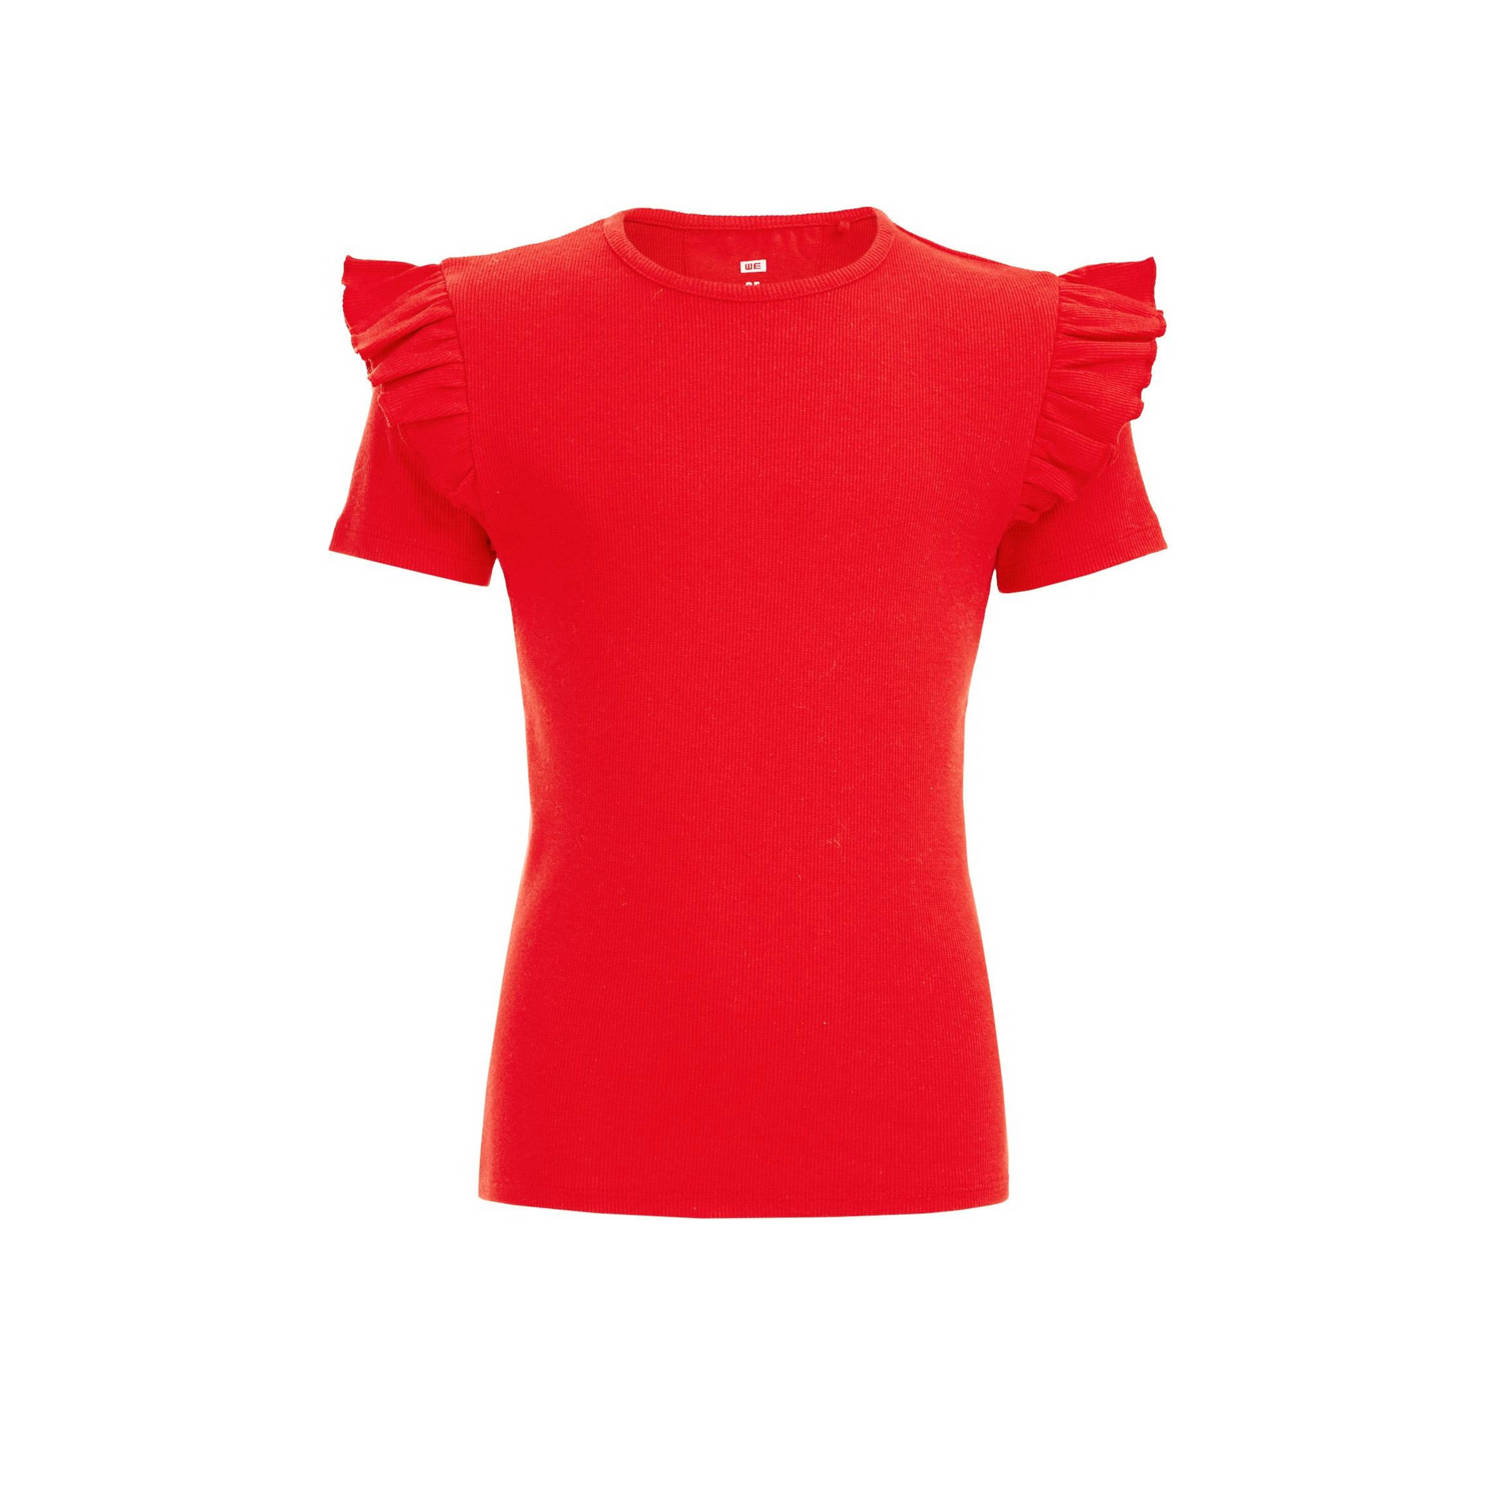 WE Fashion T-shirt rood Meisjes Stretchkatoen Ronde hals Effen 110 116